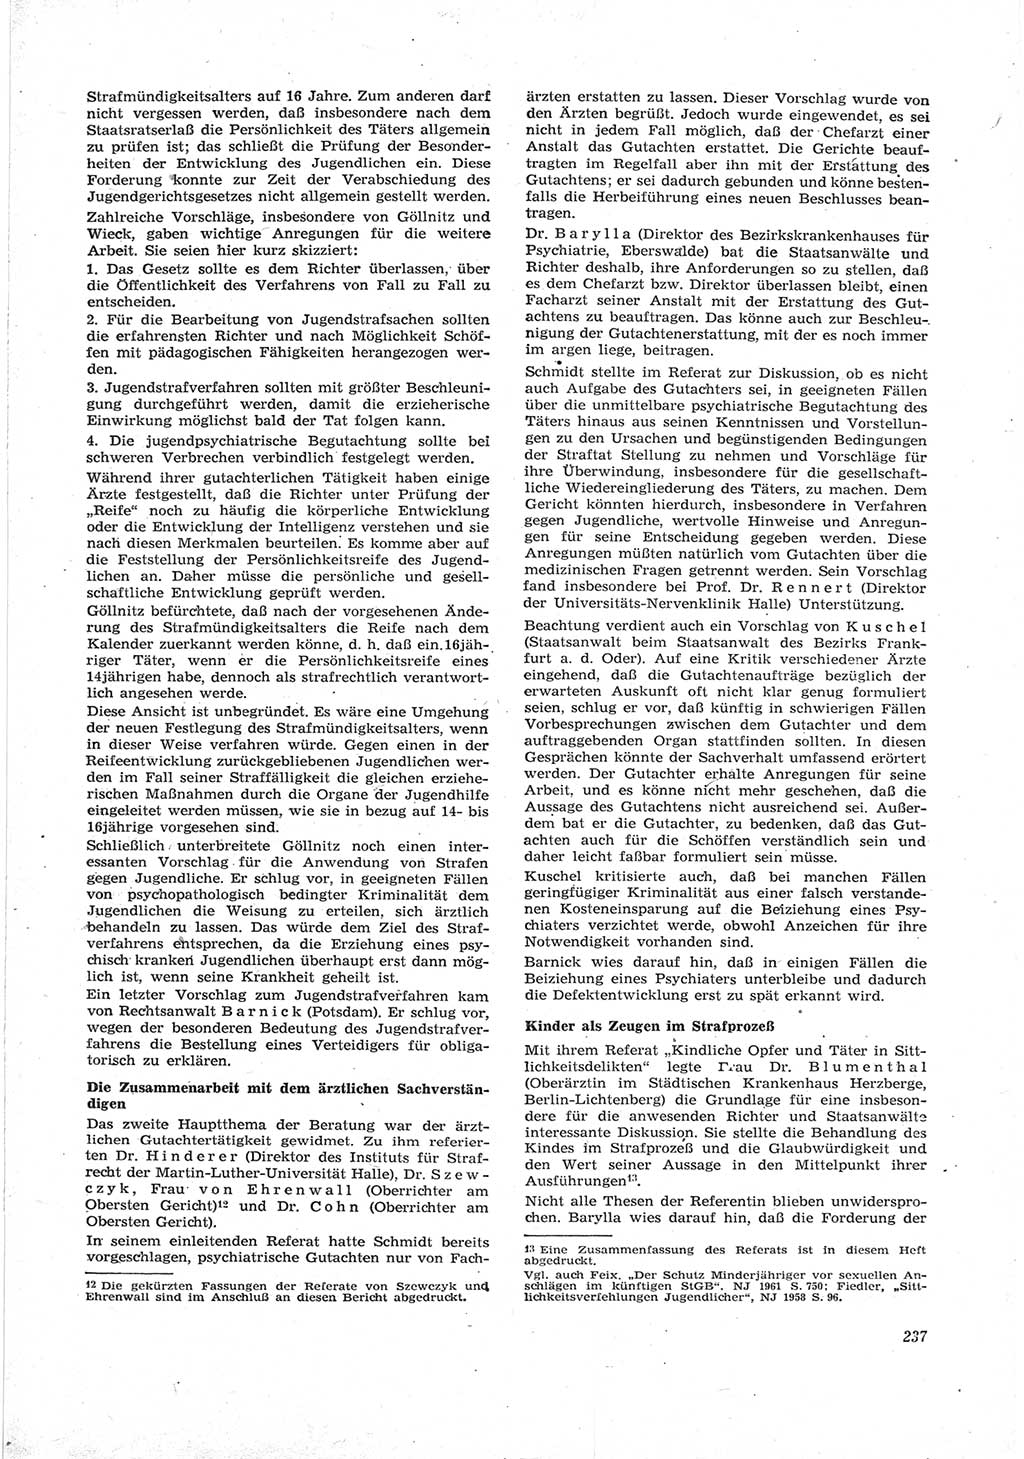 Neue Justiz (NJ), Zeitschrift für Recht und Rechtswissenschaft [Deutsche Demokratische Republik (DDR)], 17. Jahrgang 1963, Seite 237 (NJ DDR 1963, S. 237)